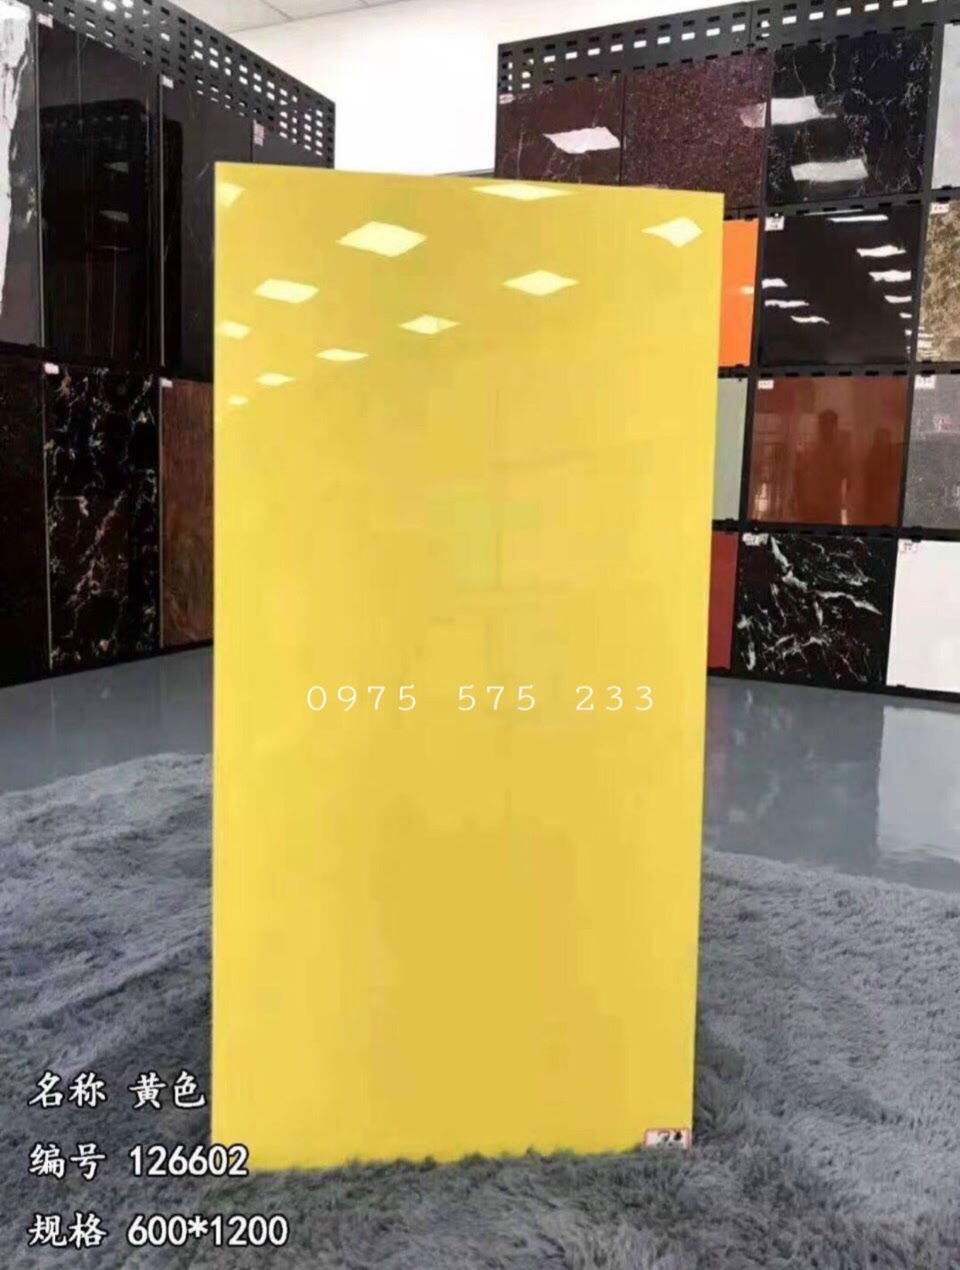 Gạch trung quốc 60x120 ốp lát màu vàng trơn siêu bóng đẹp